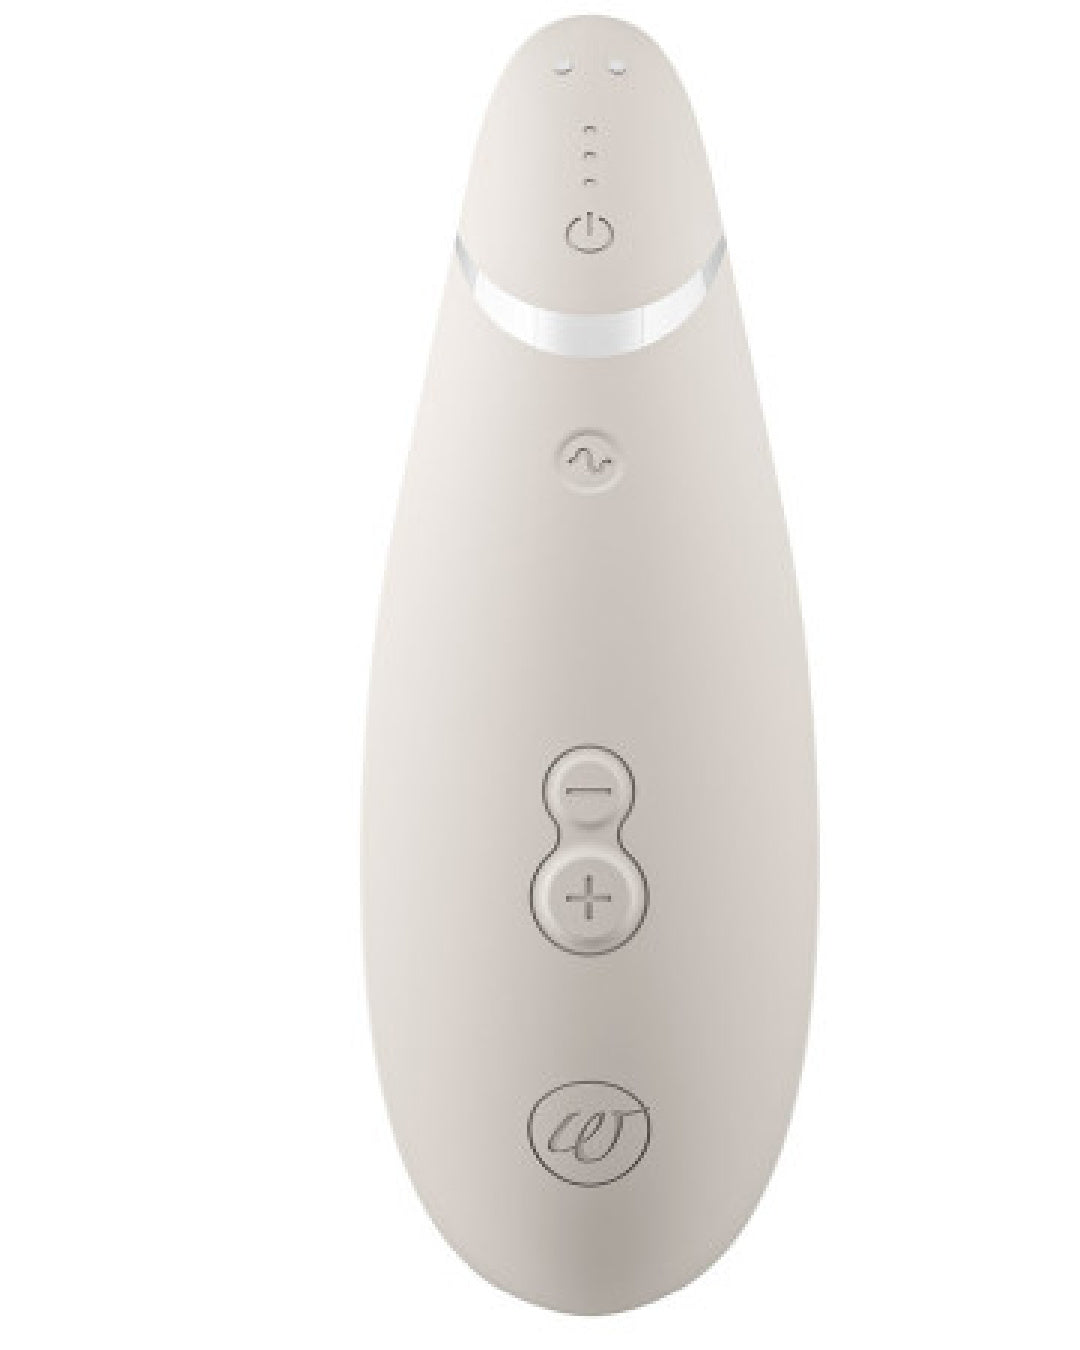 Womanizer Premium 2 Pleasure Air Clitoral Stimulator - Warm Gray  back view 